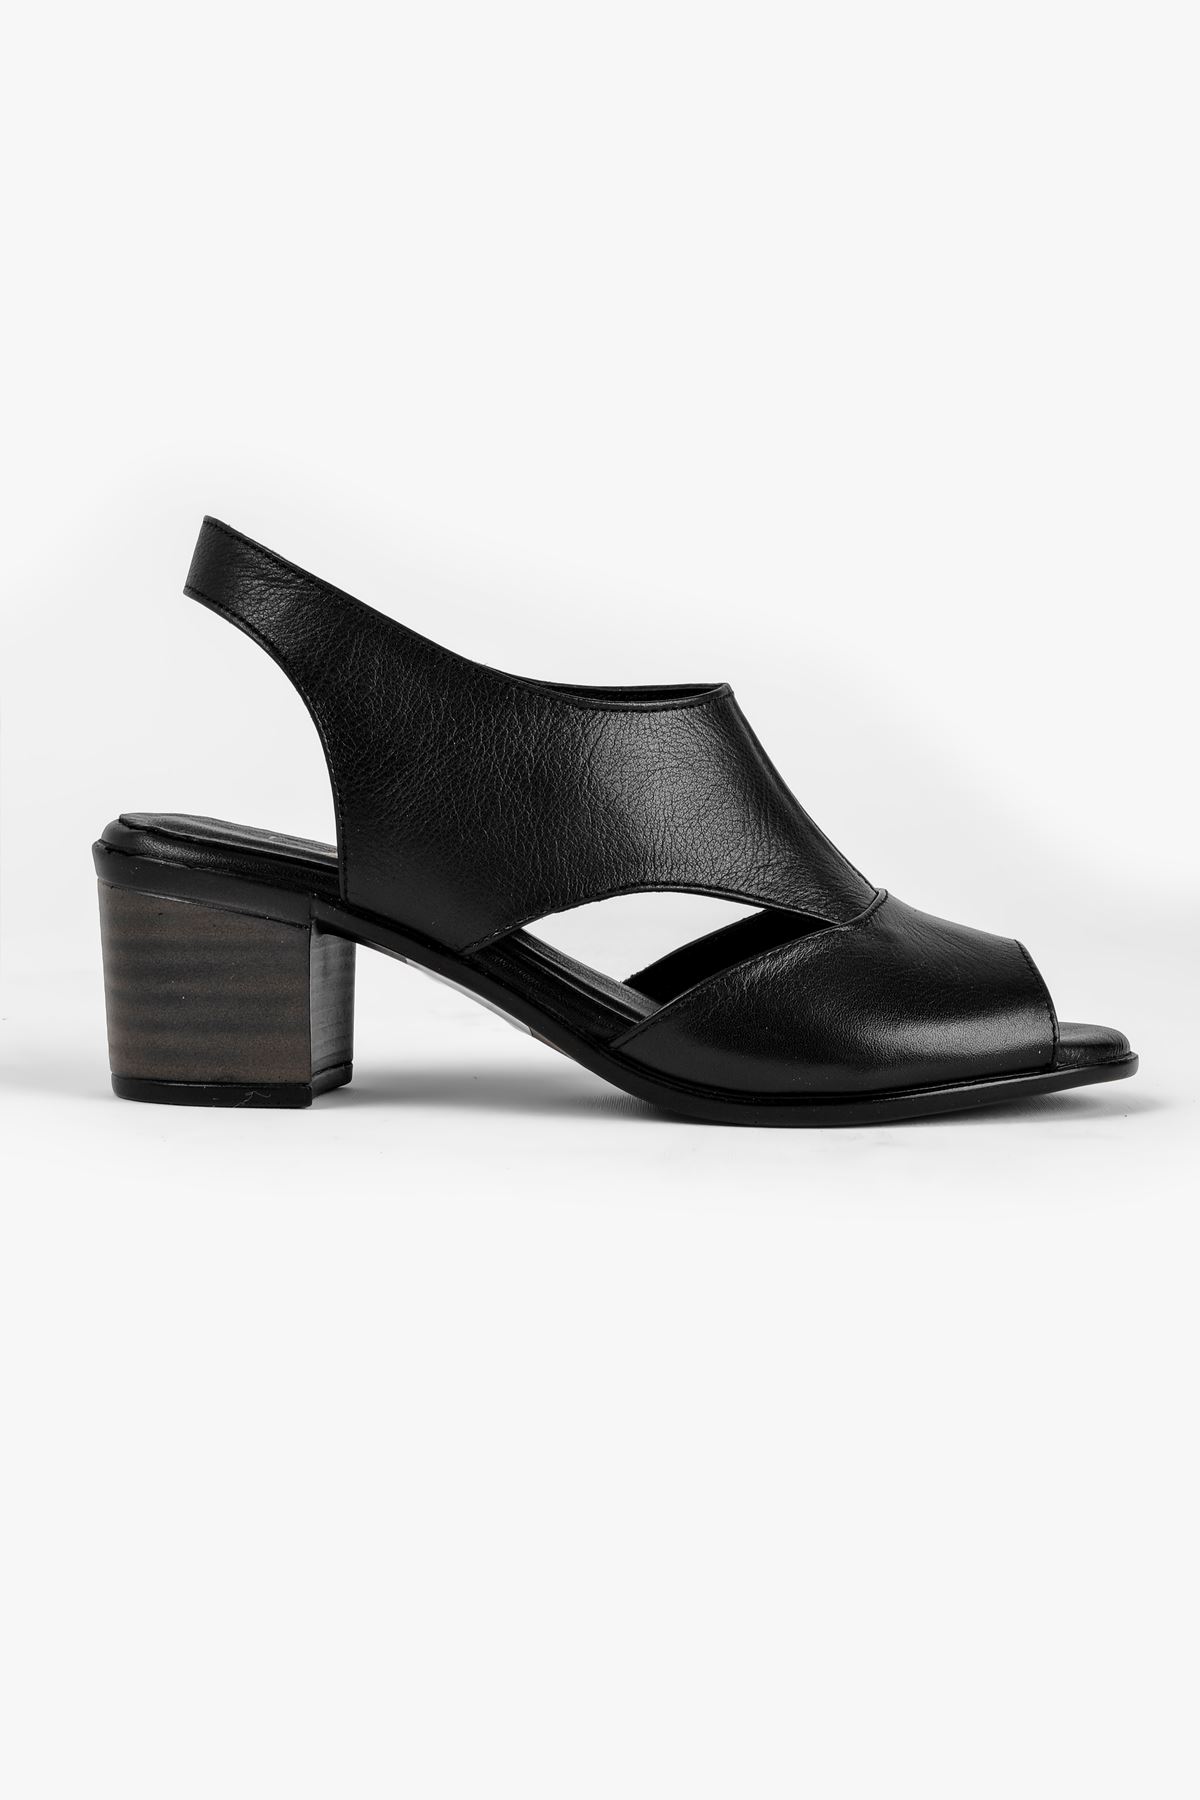 Breda Kadın Hakiki Deri Topuklu Ayakkabı-siyah